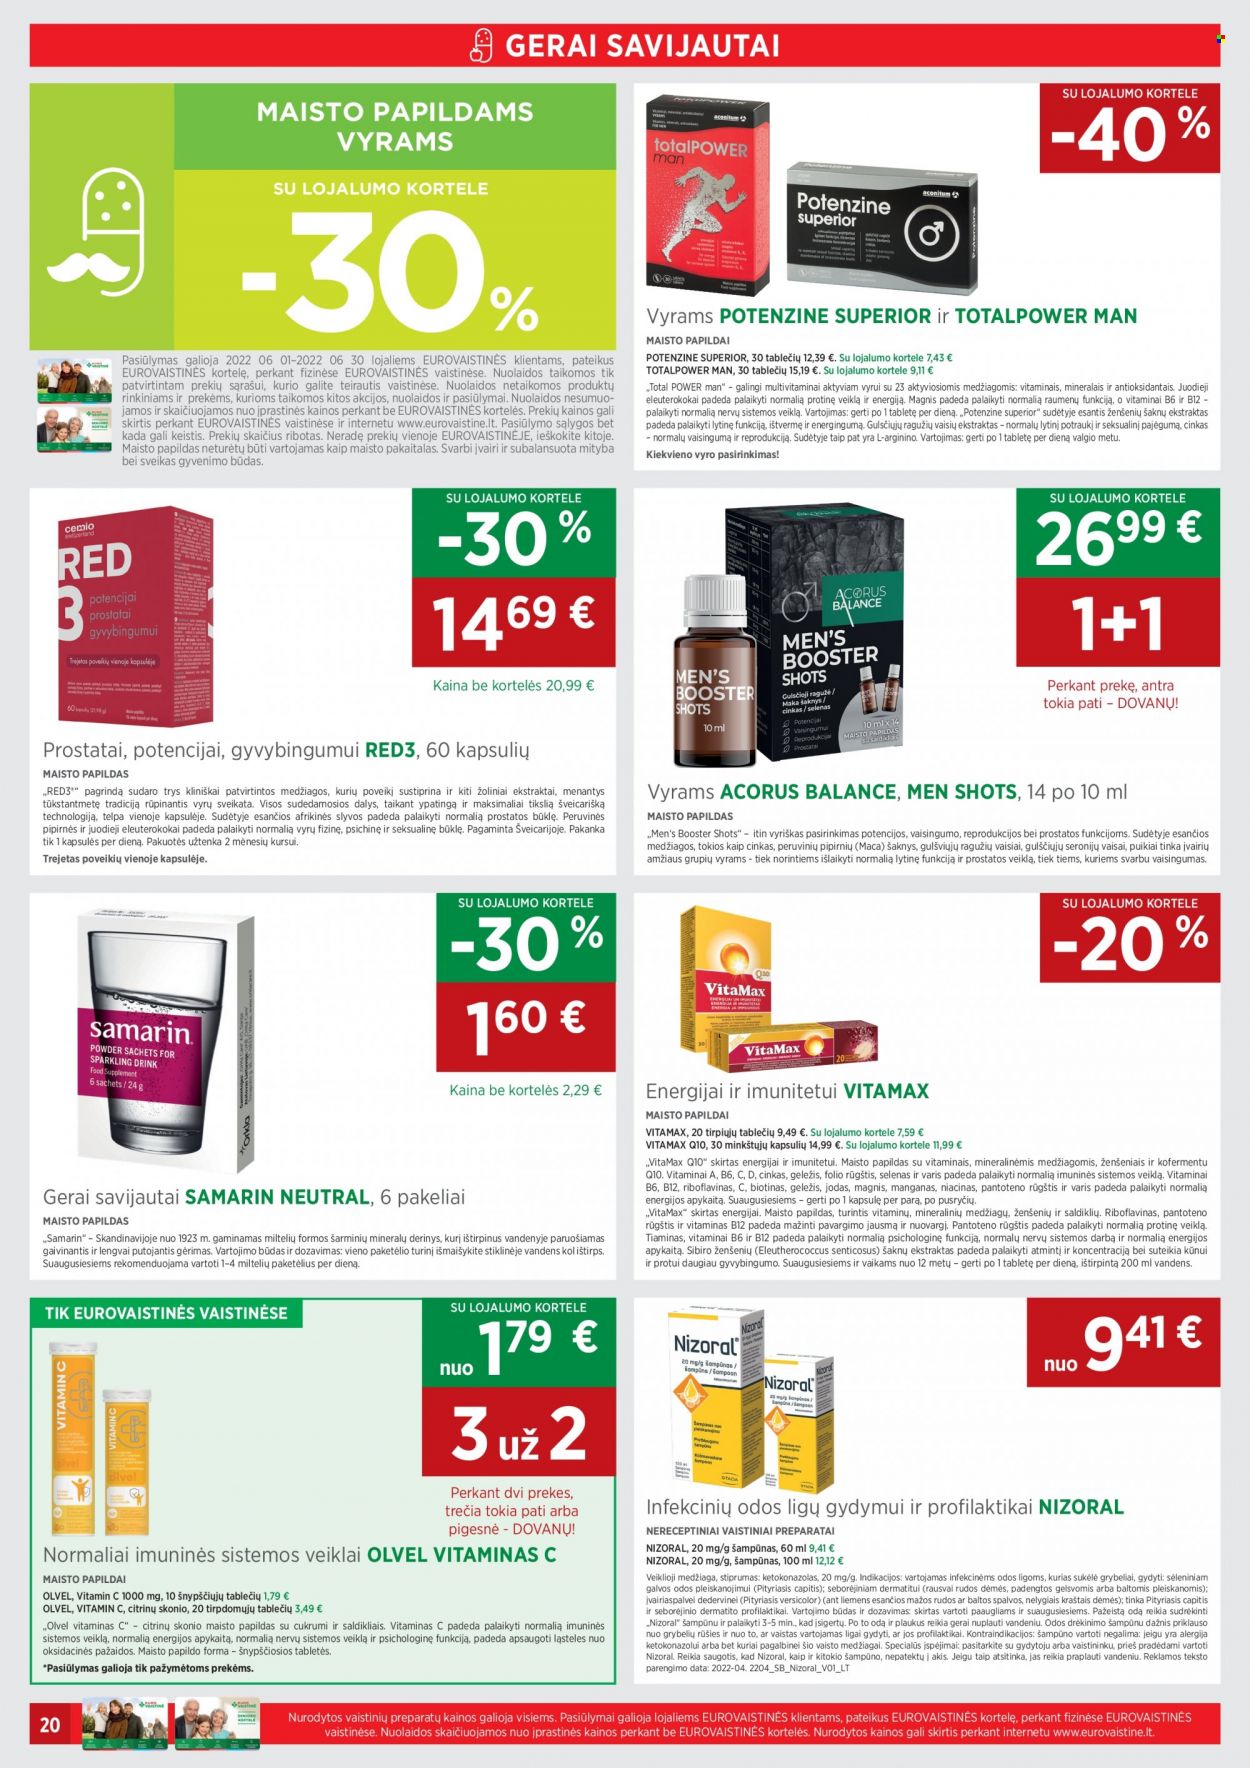 thumbnail - „EUROVAISTINĖ“ leidinys - 2022 06 01 - 2022 06 30 - Išpardavimų produktai - šampūnas, B12, Magnis, maisto papildai, Red3, Samarin, vitamin c. 20 puslapis.